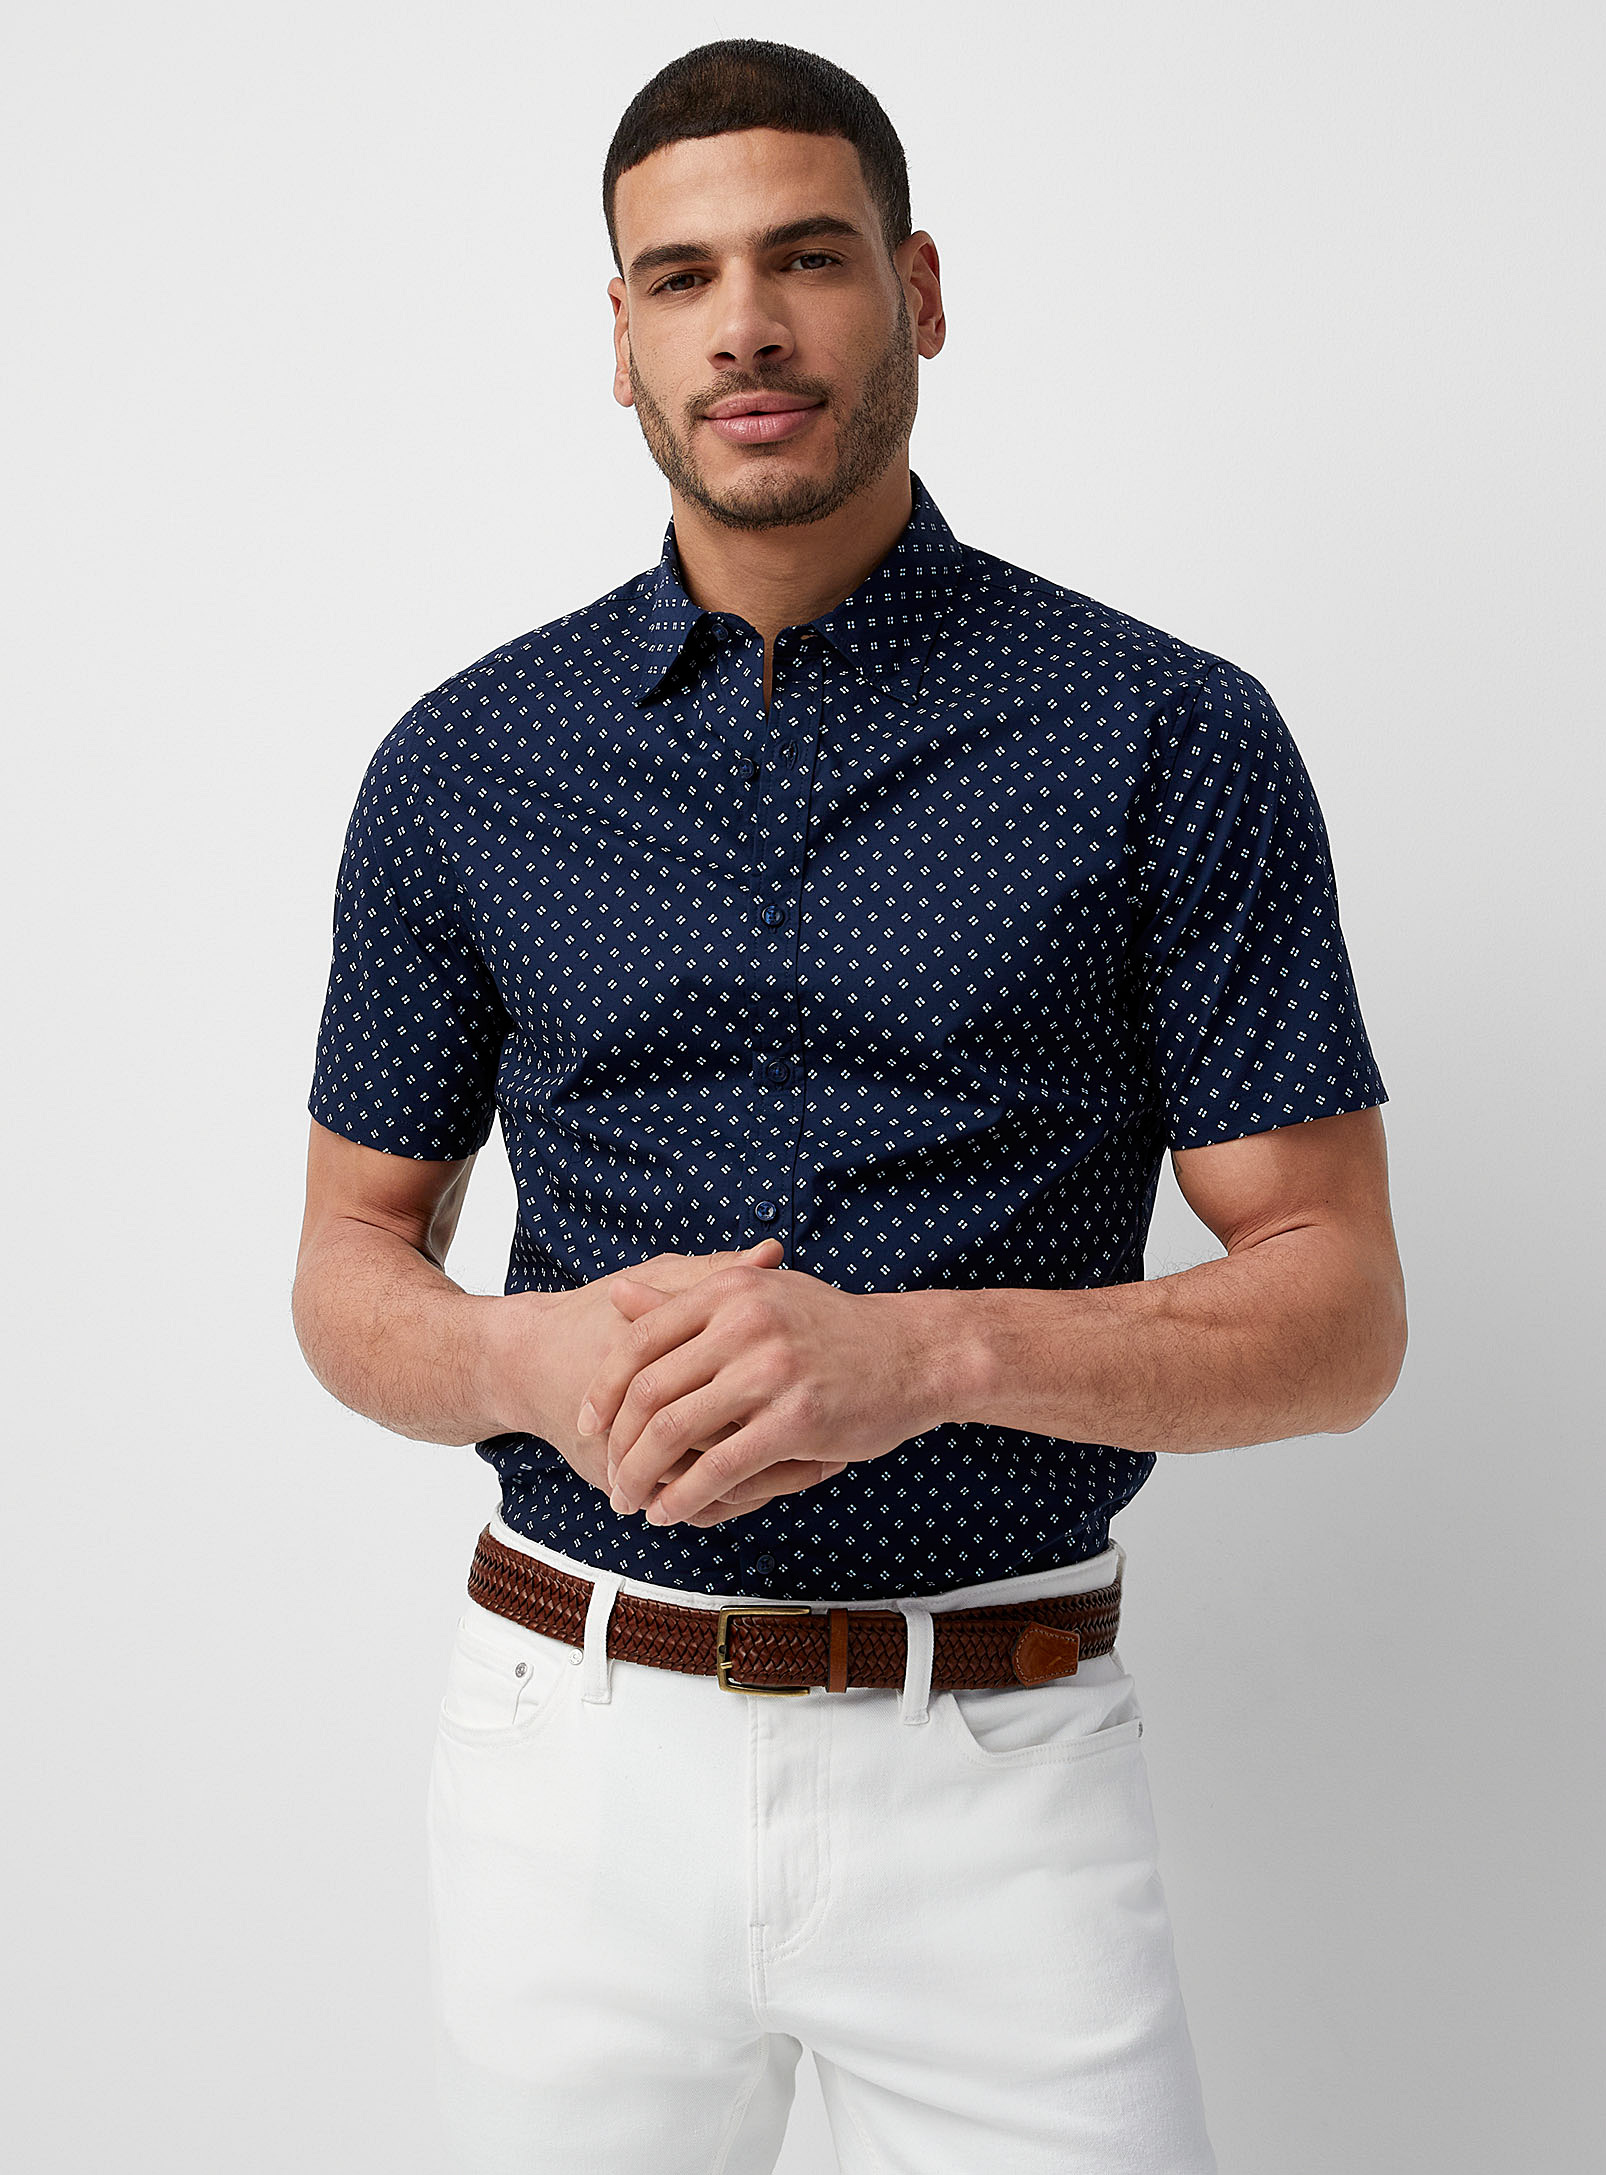 Michael Kors - Men's Mini-pattern shirt